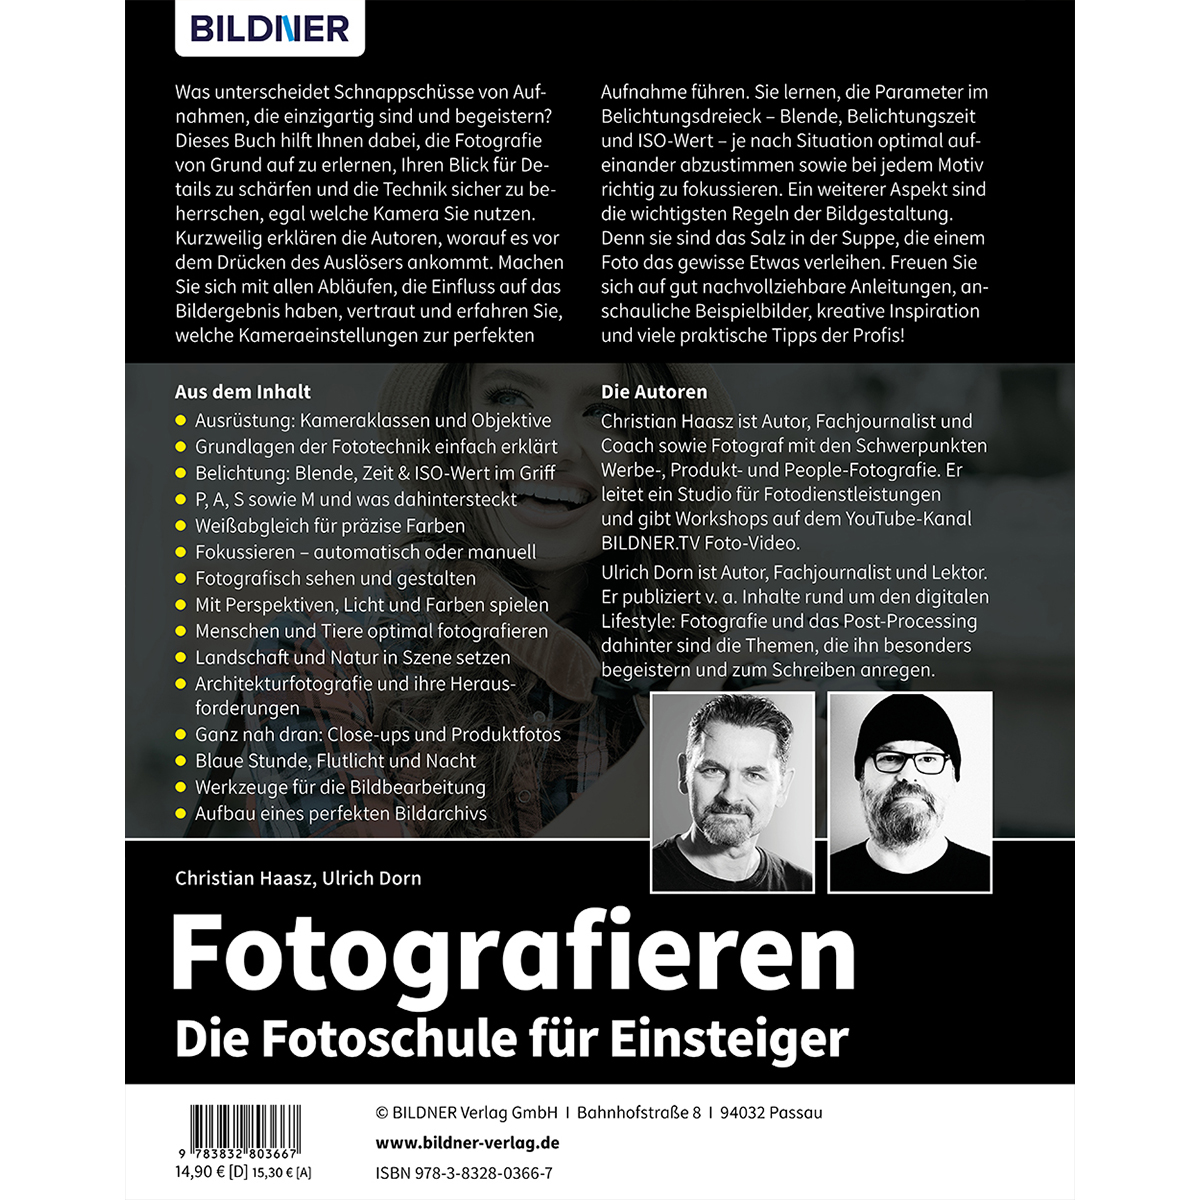 Fotografieren - Die Fotoschule Einsteiger für